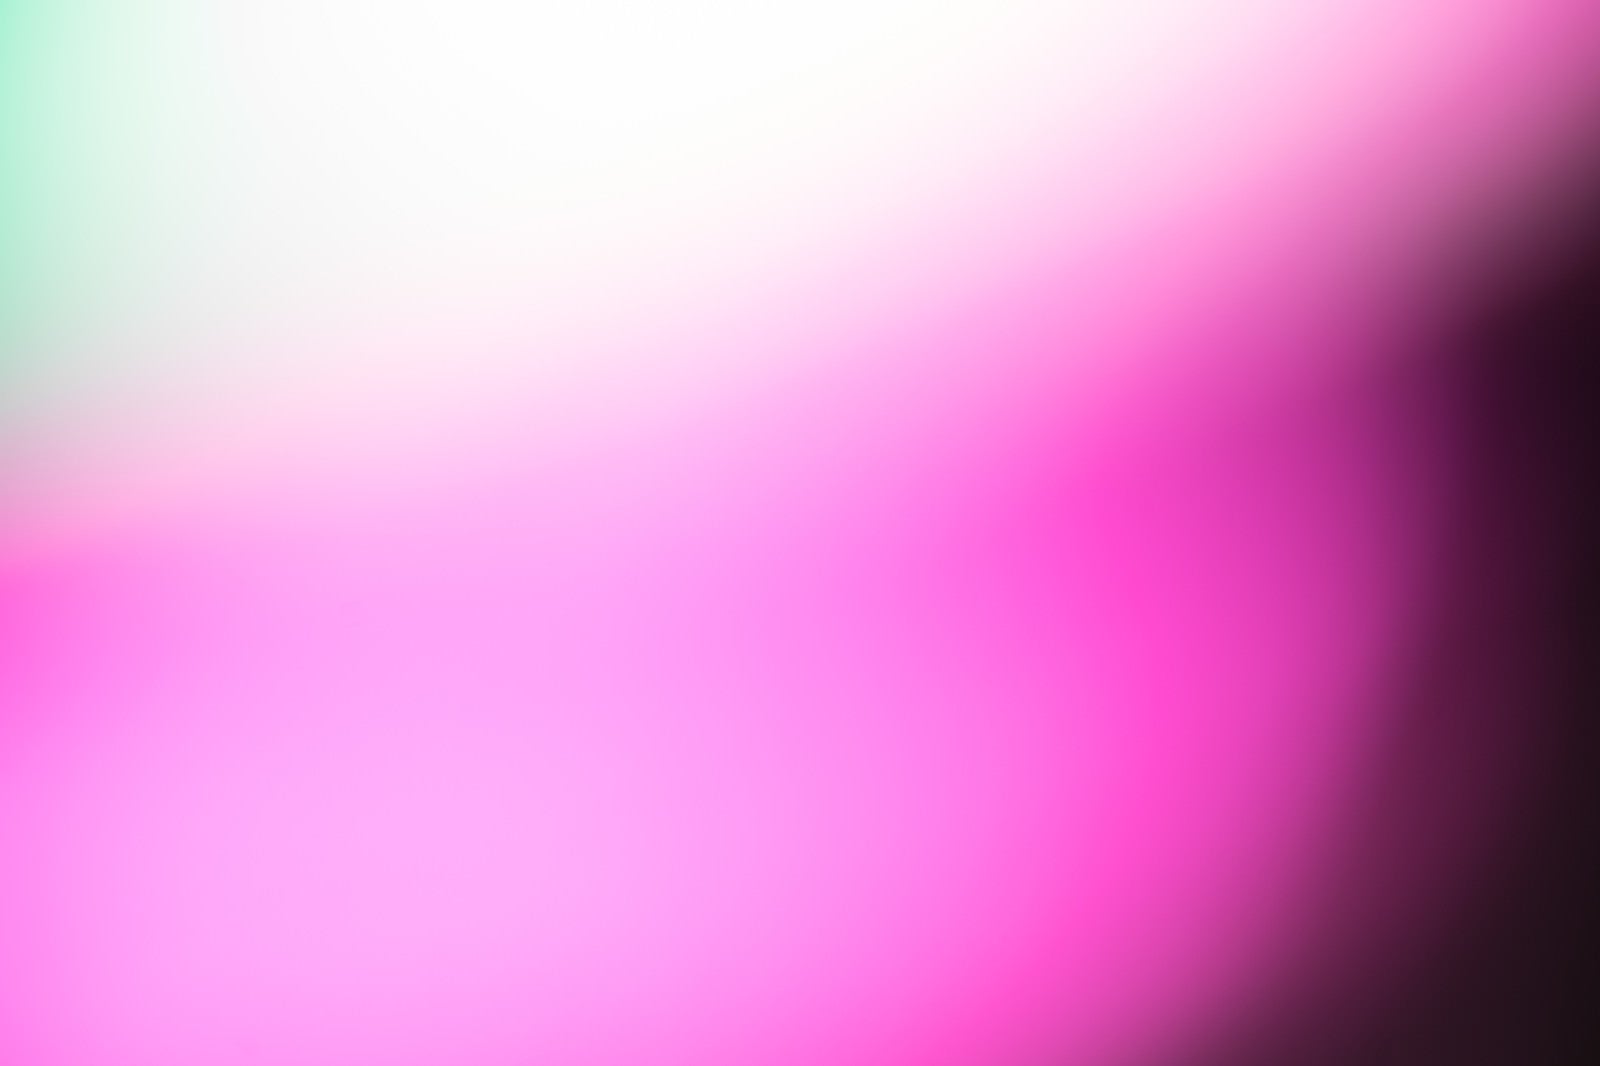 「怪しいピンクパープルの光」の写真